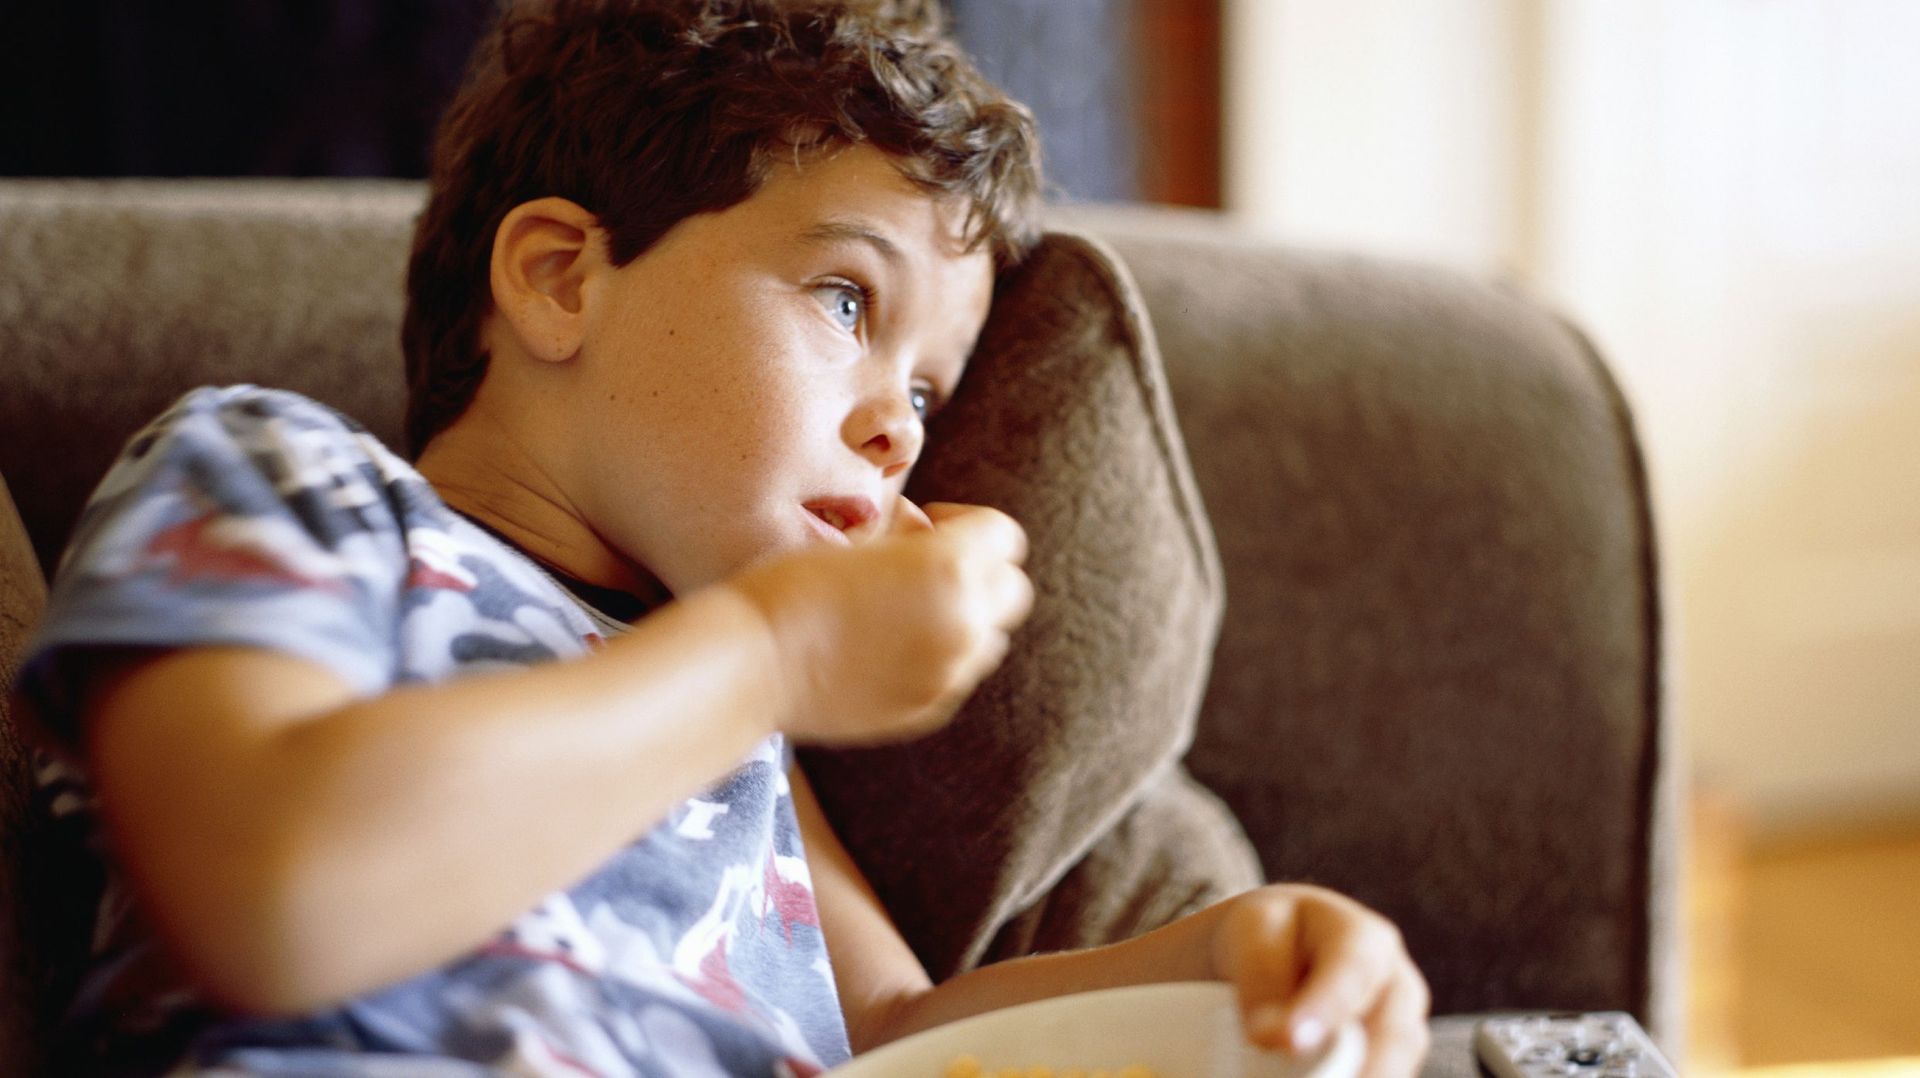 Plus de la moitié des publicités alimentaires vues par des enfants et des adolescents à la télévision concernent des produits gras, salés et sucrés